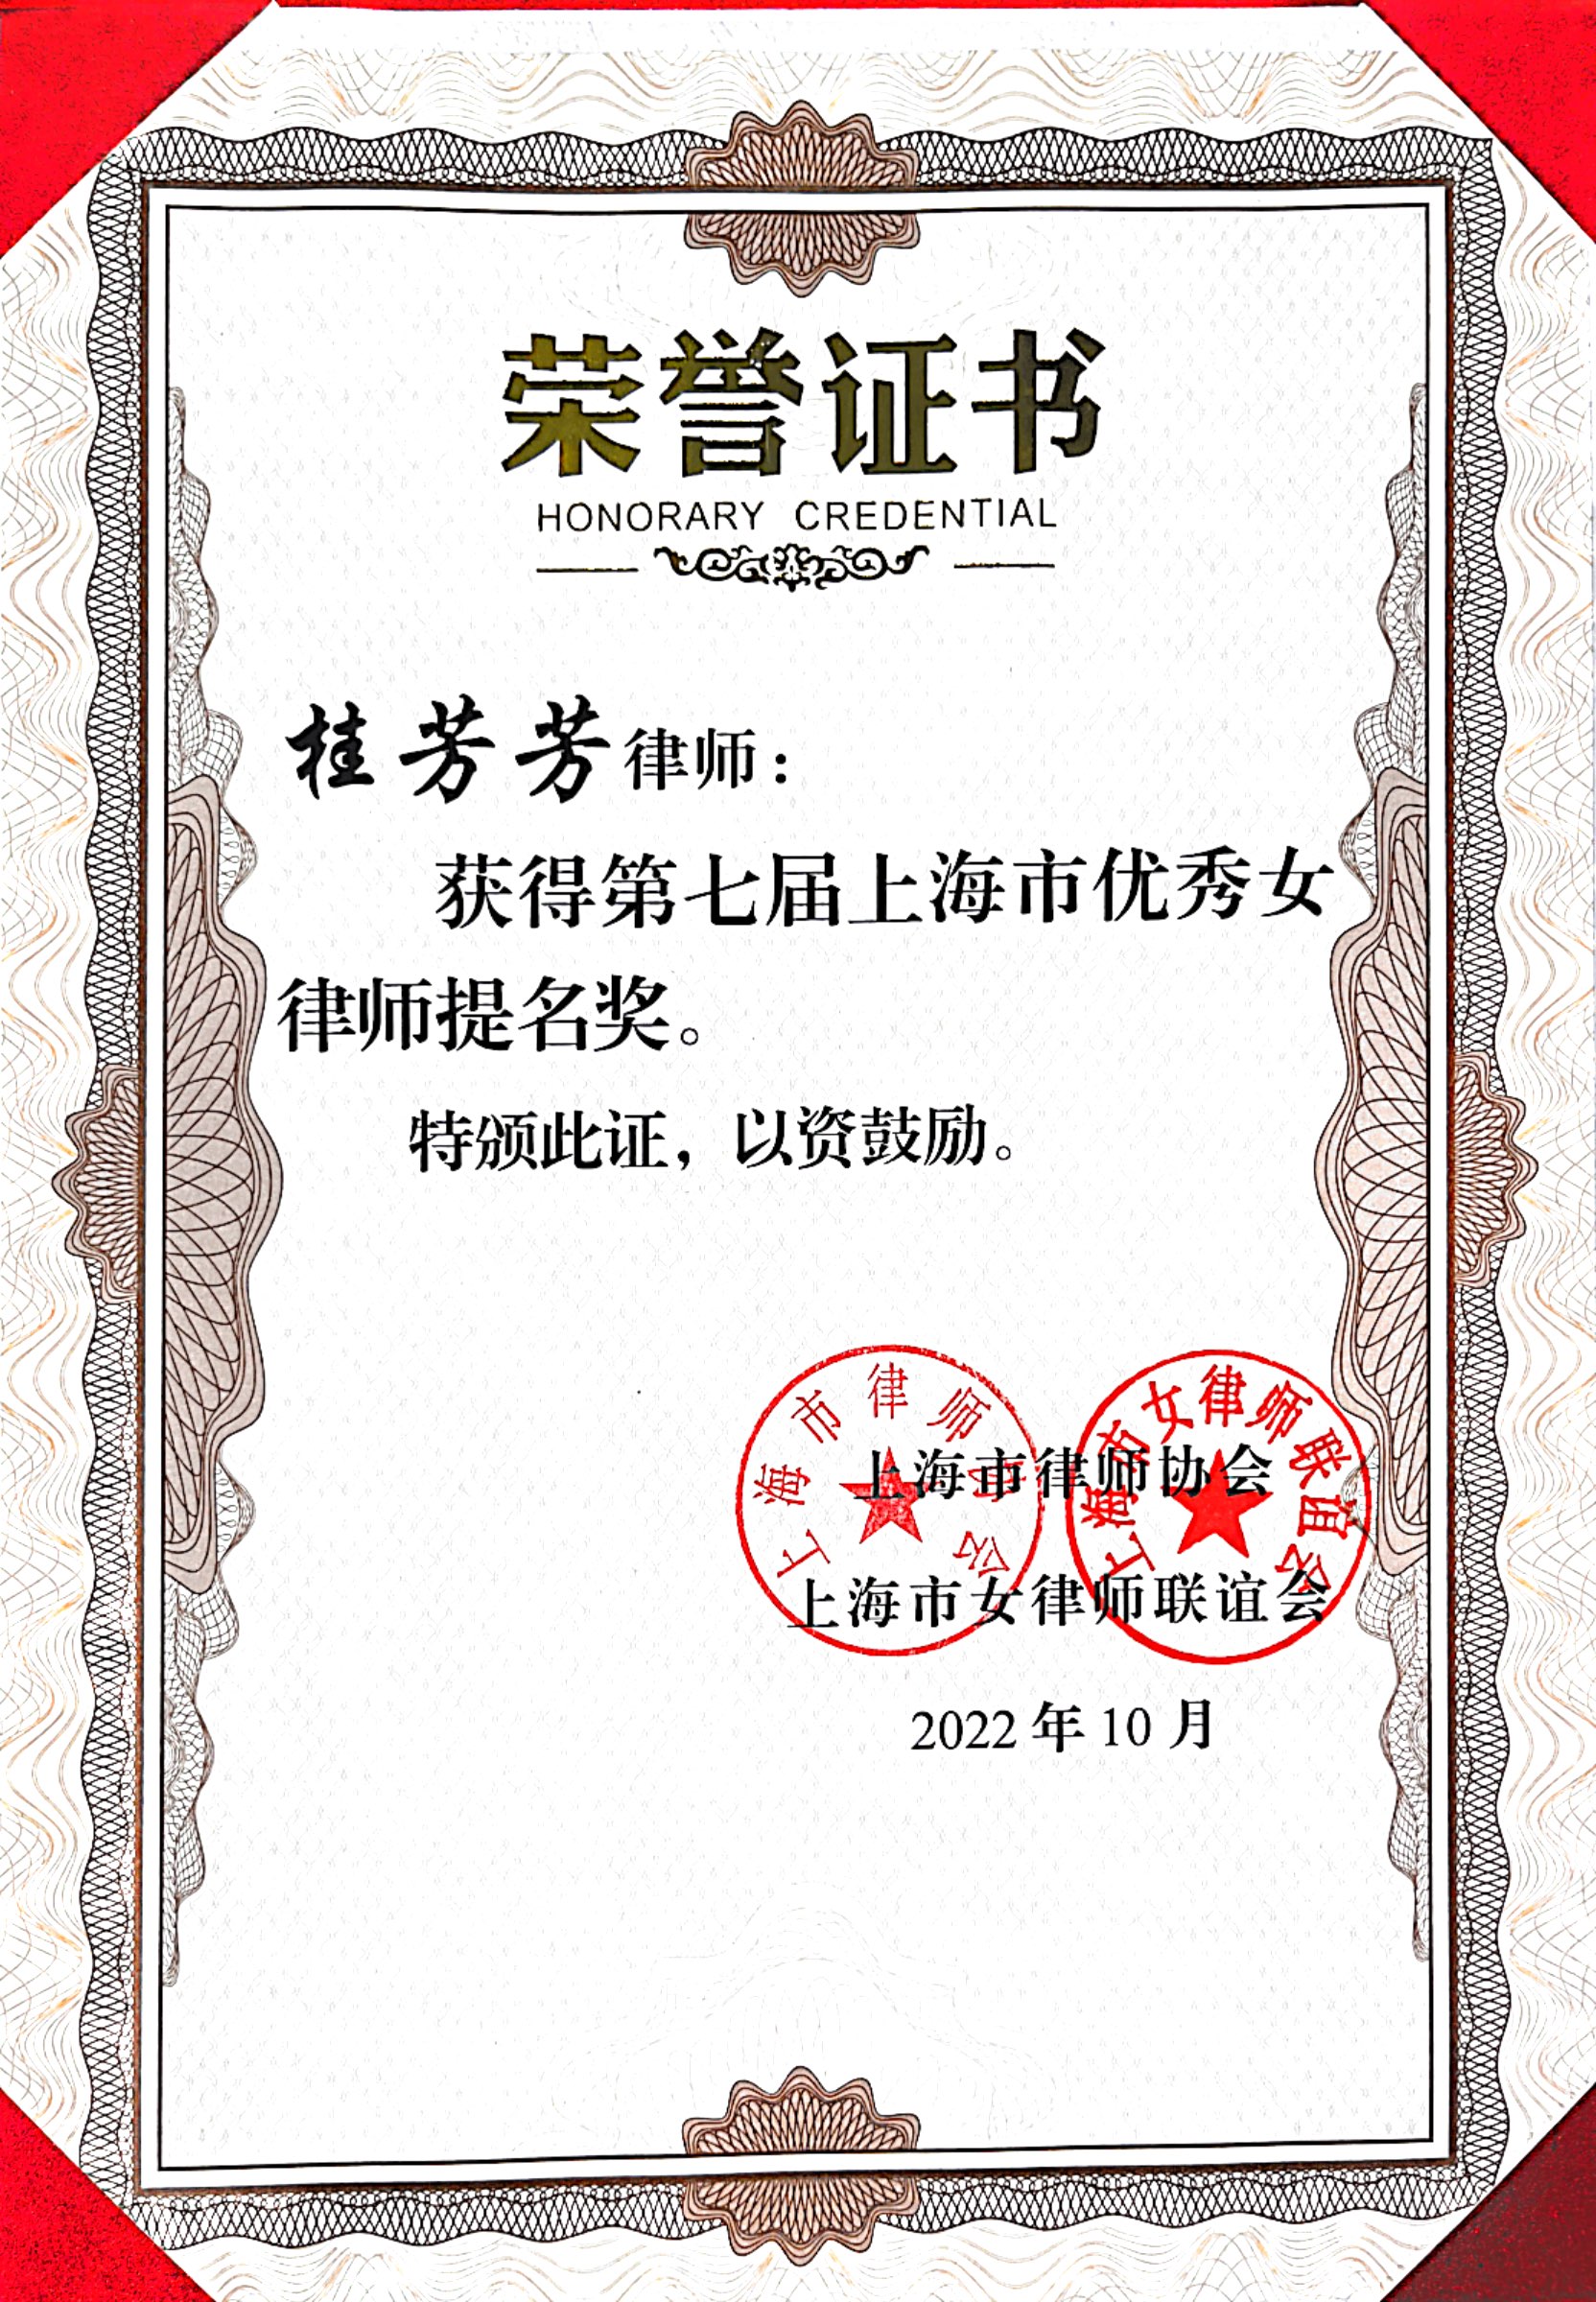 桂芳芳律师荣获第七届上海市优秀女律师提名奖